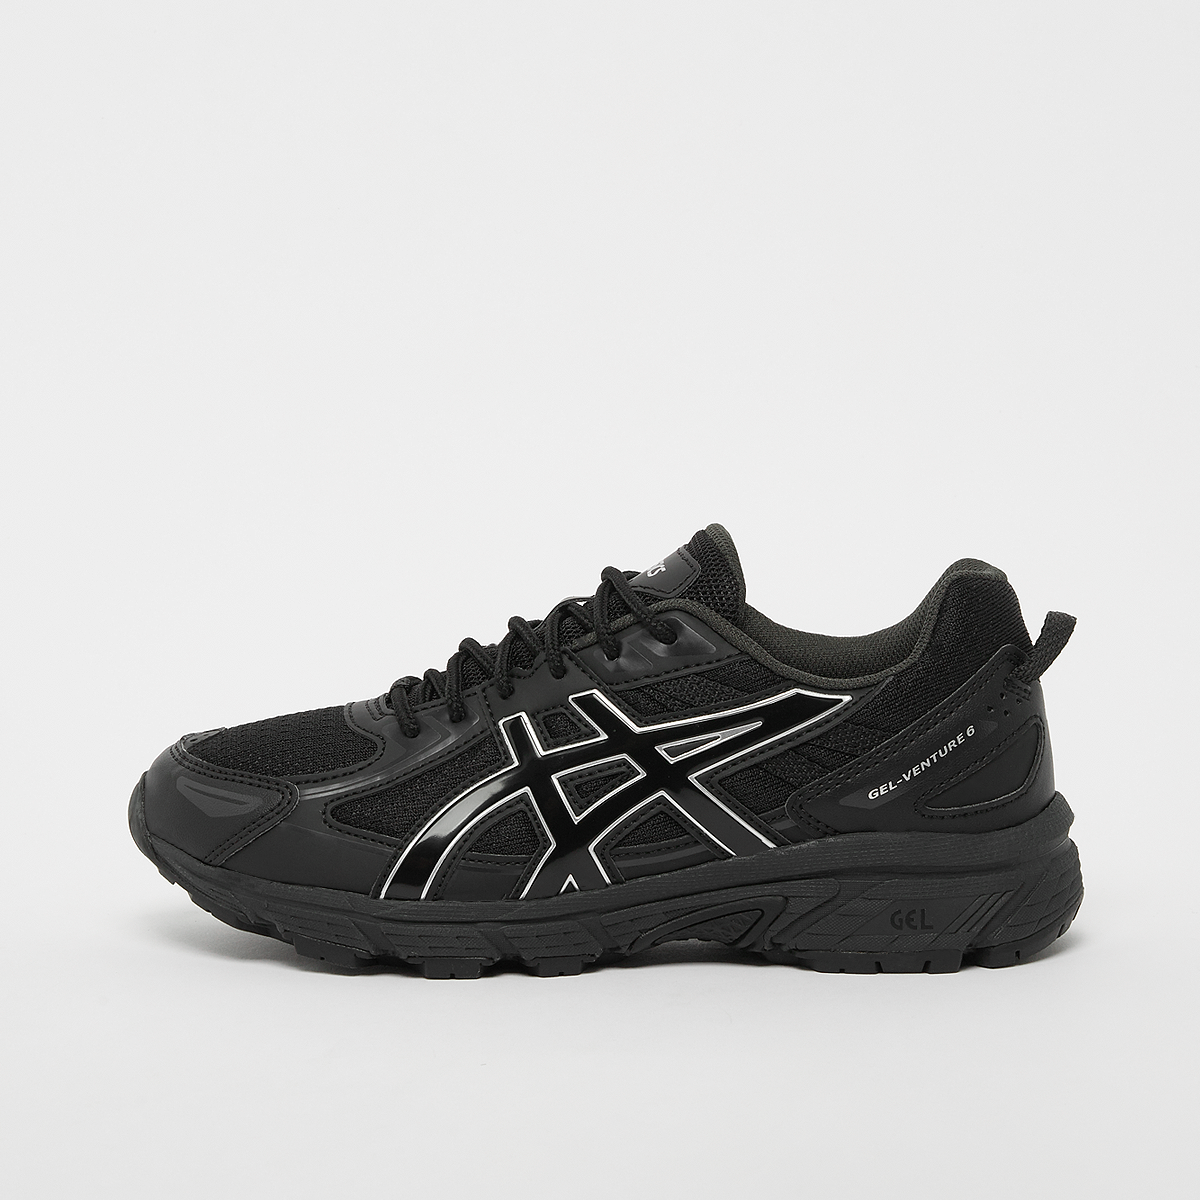 Gel-Venture 6 (GS), ASICS SportStyle, Footwear, black/black, taille: 36